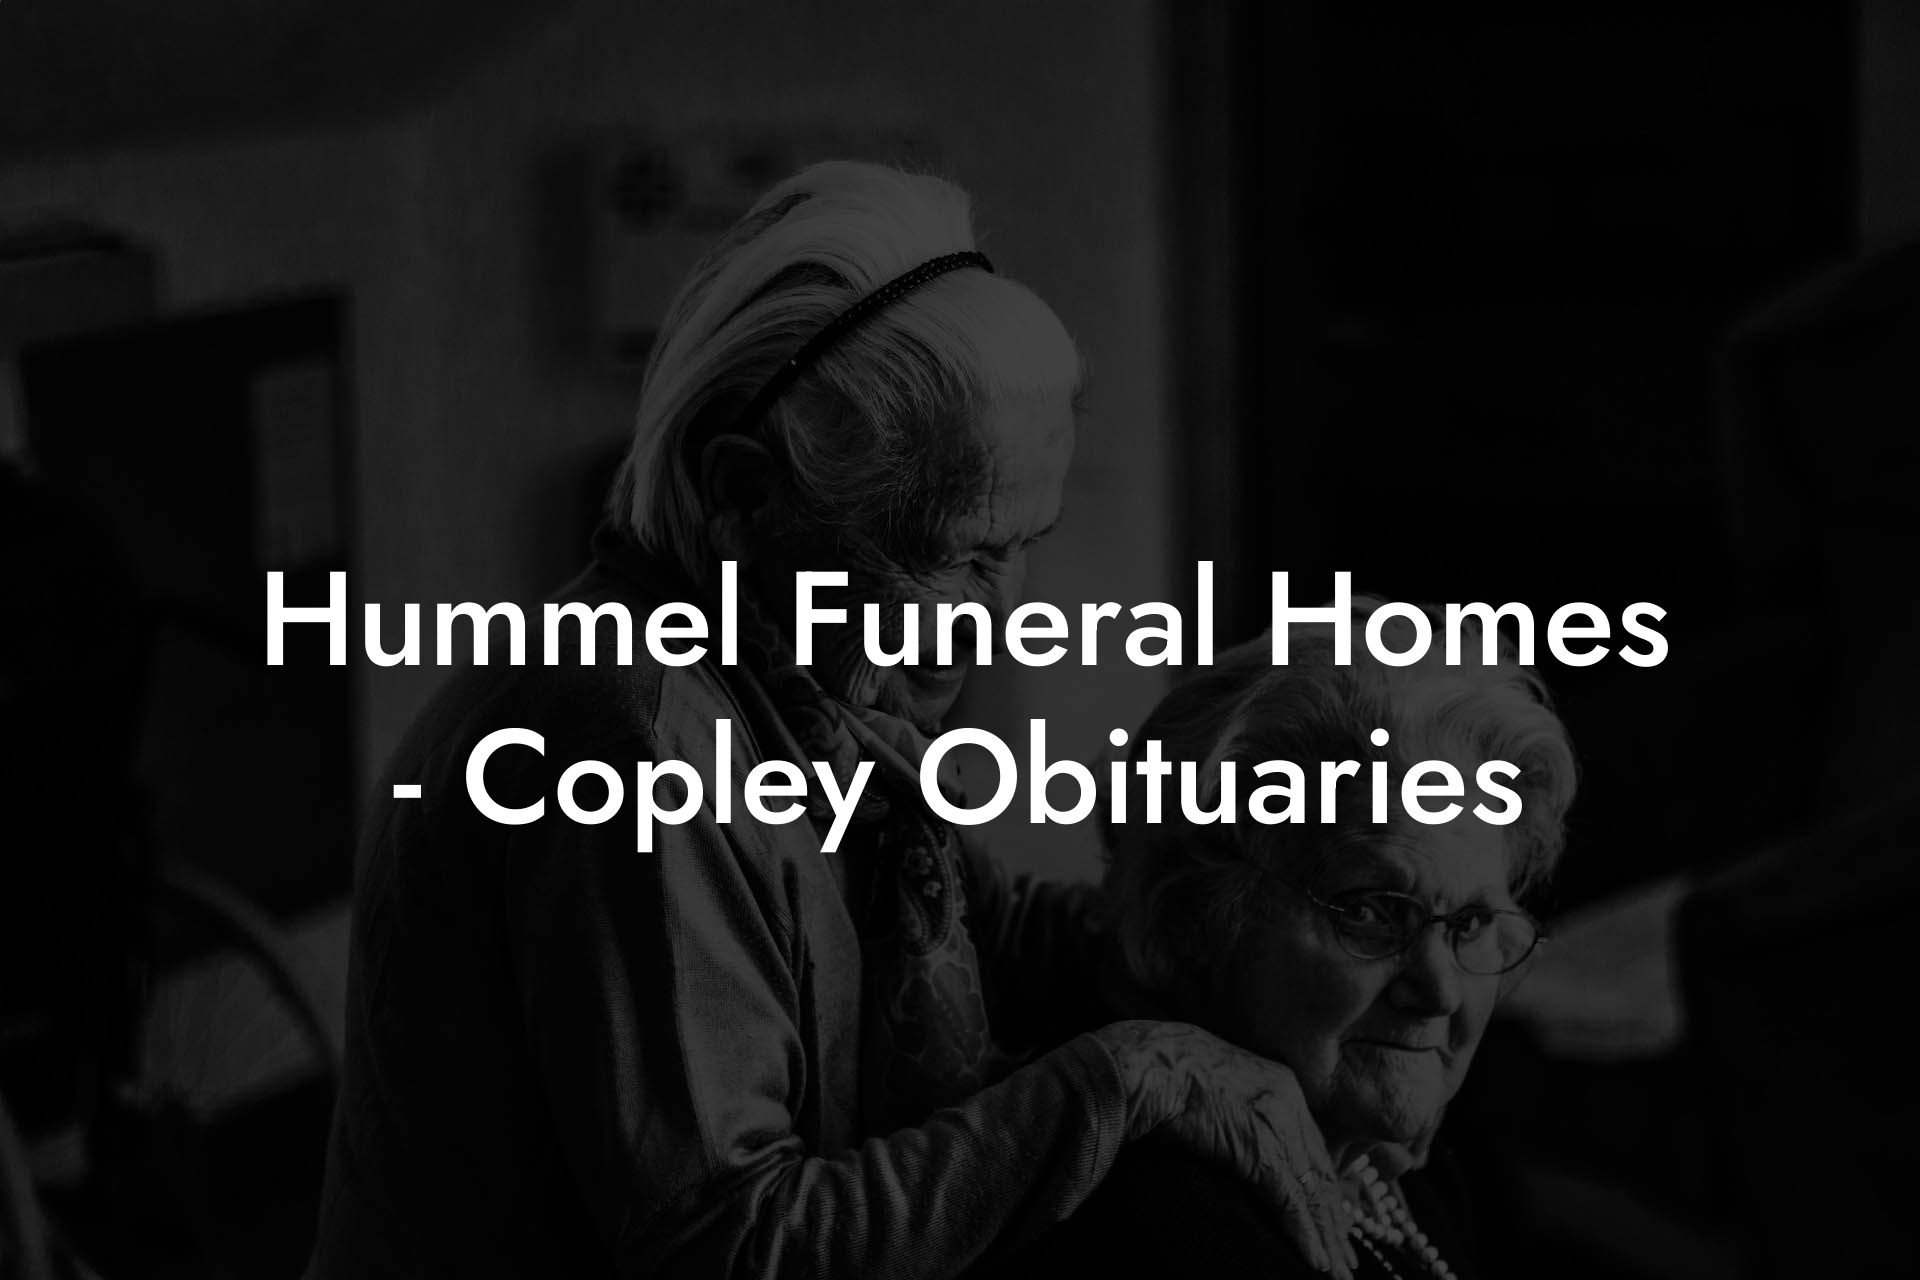 Hummel Funeral Homes - Copley Obituaries